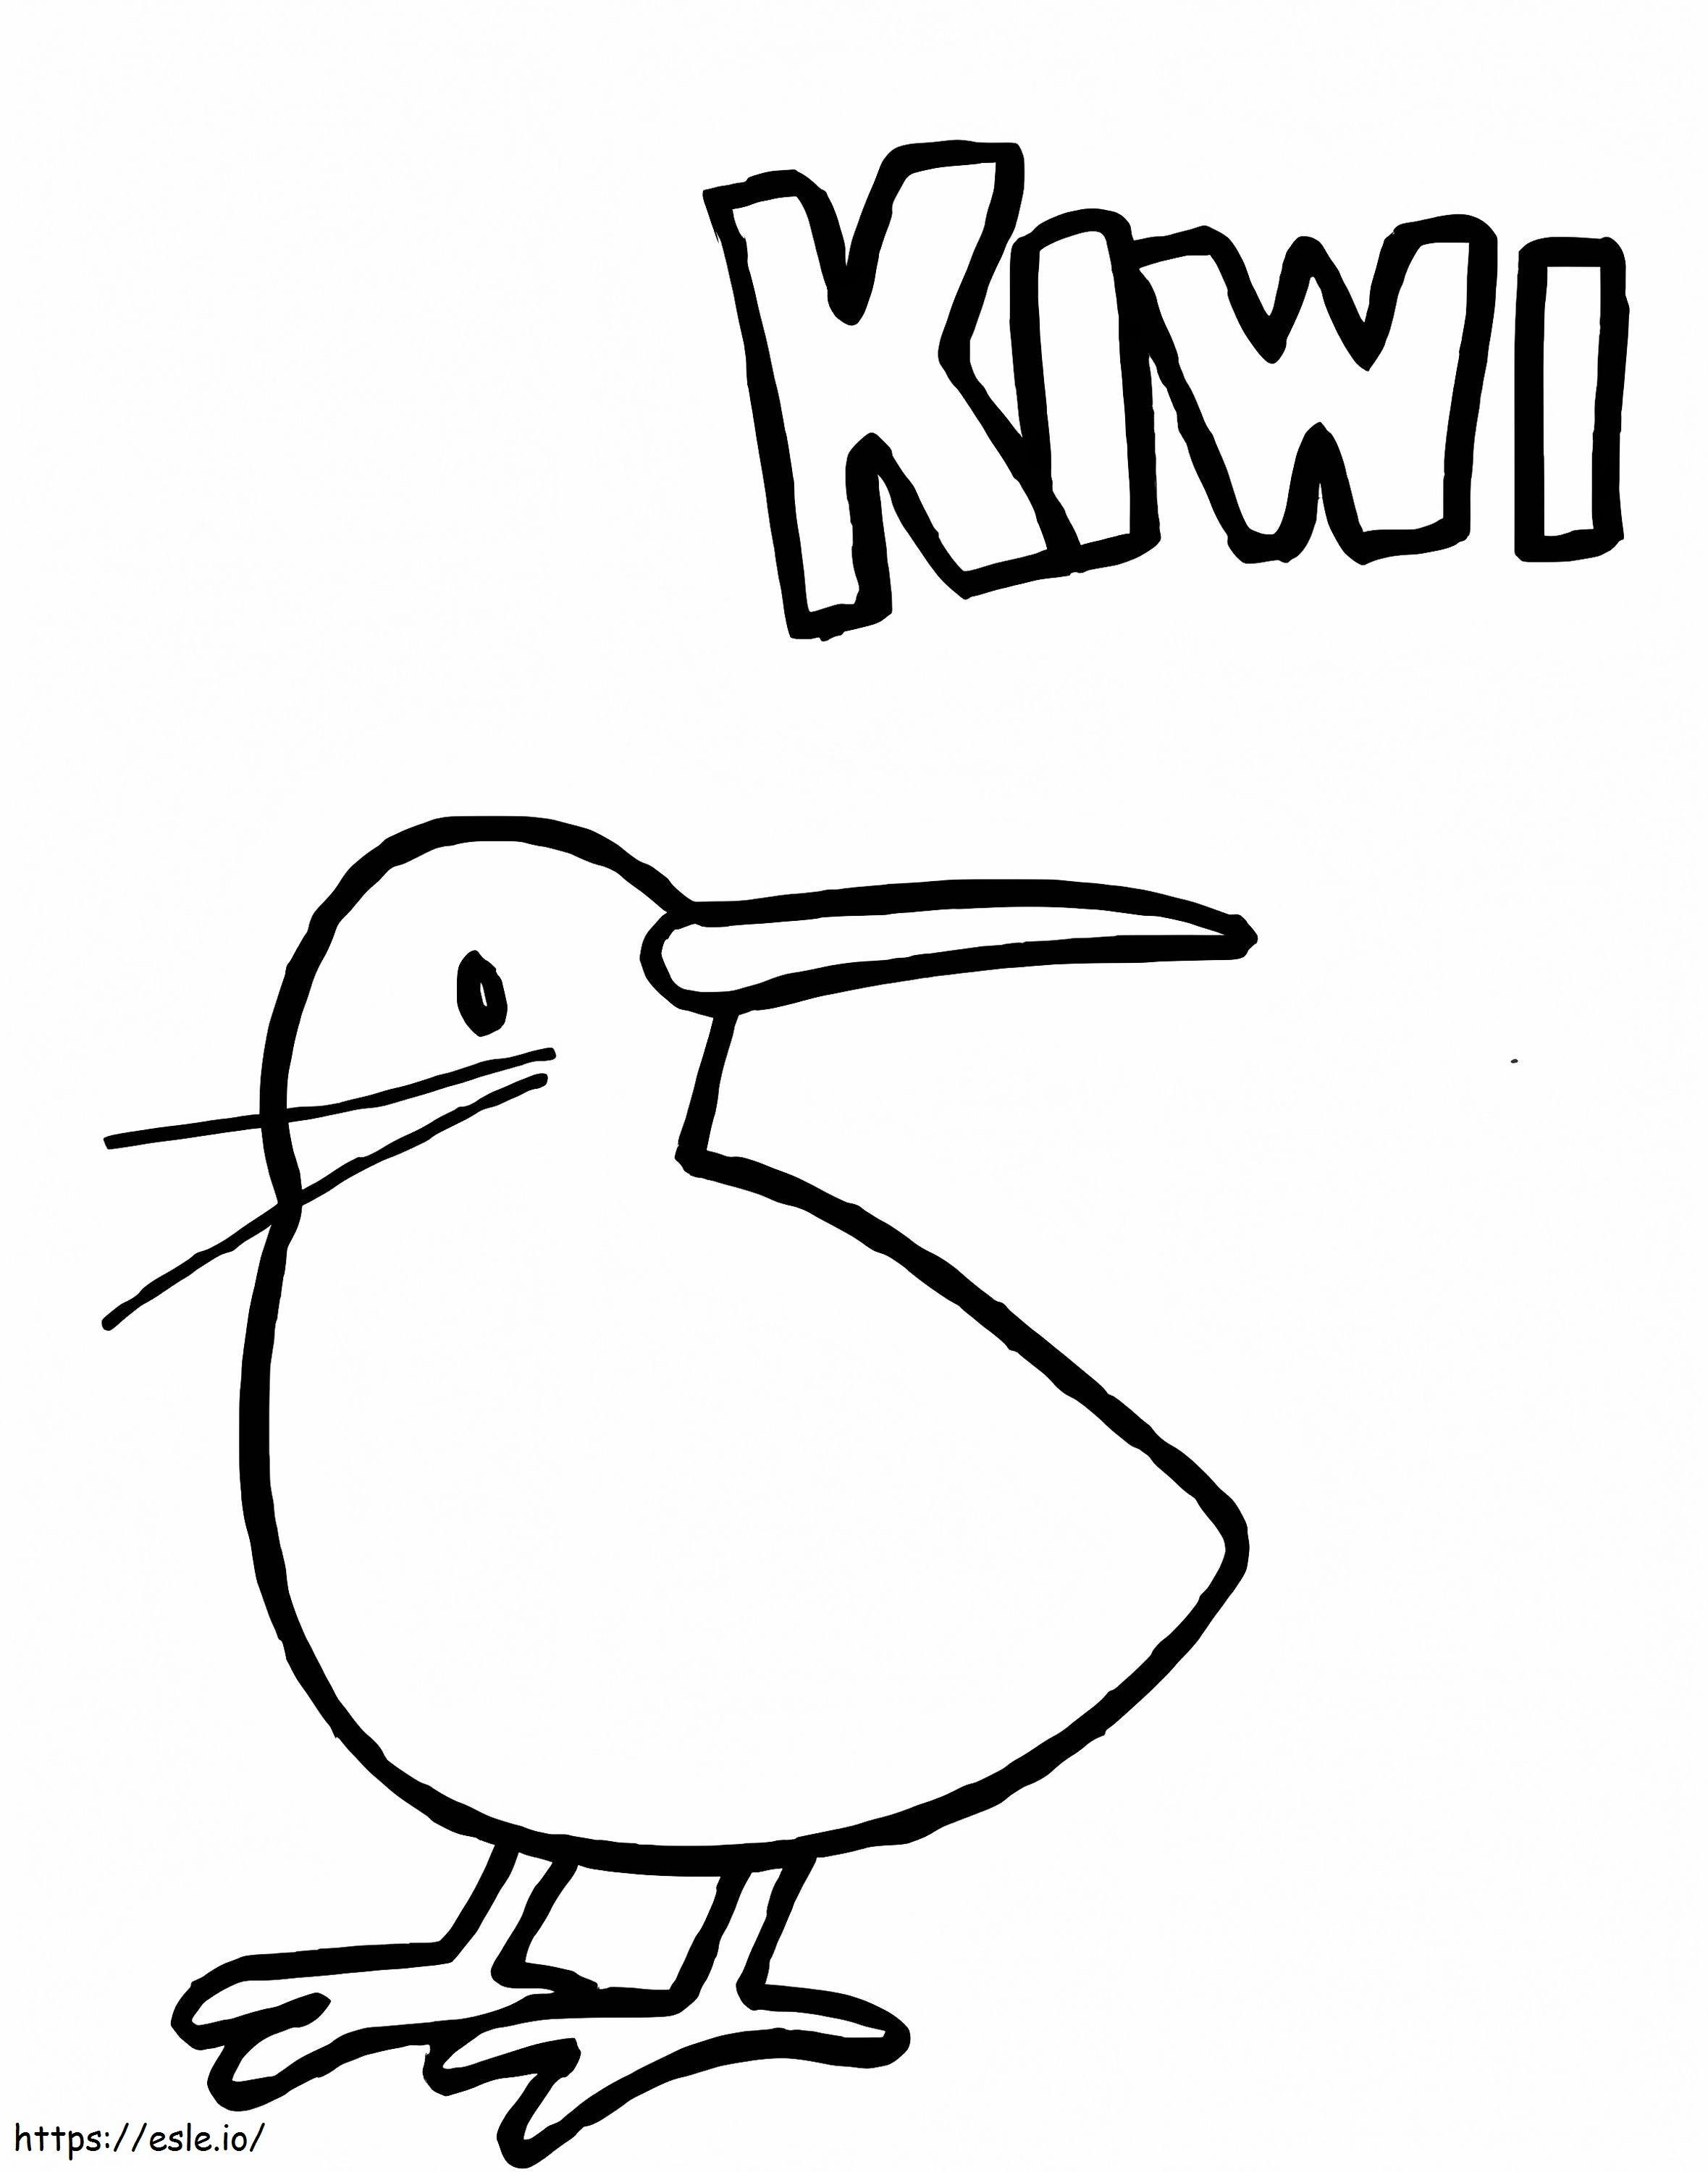 Uccellino Kiwi da colorare